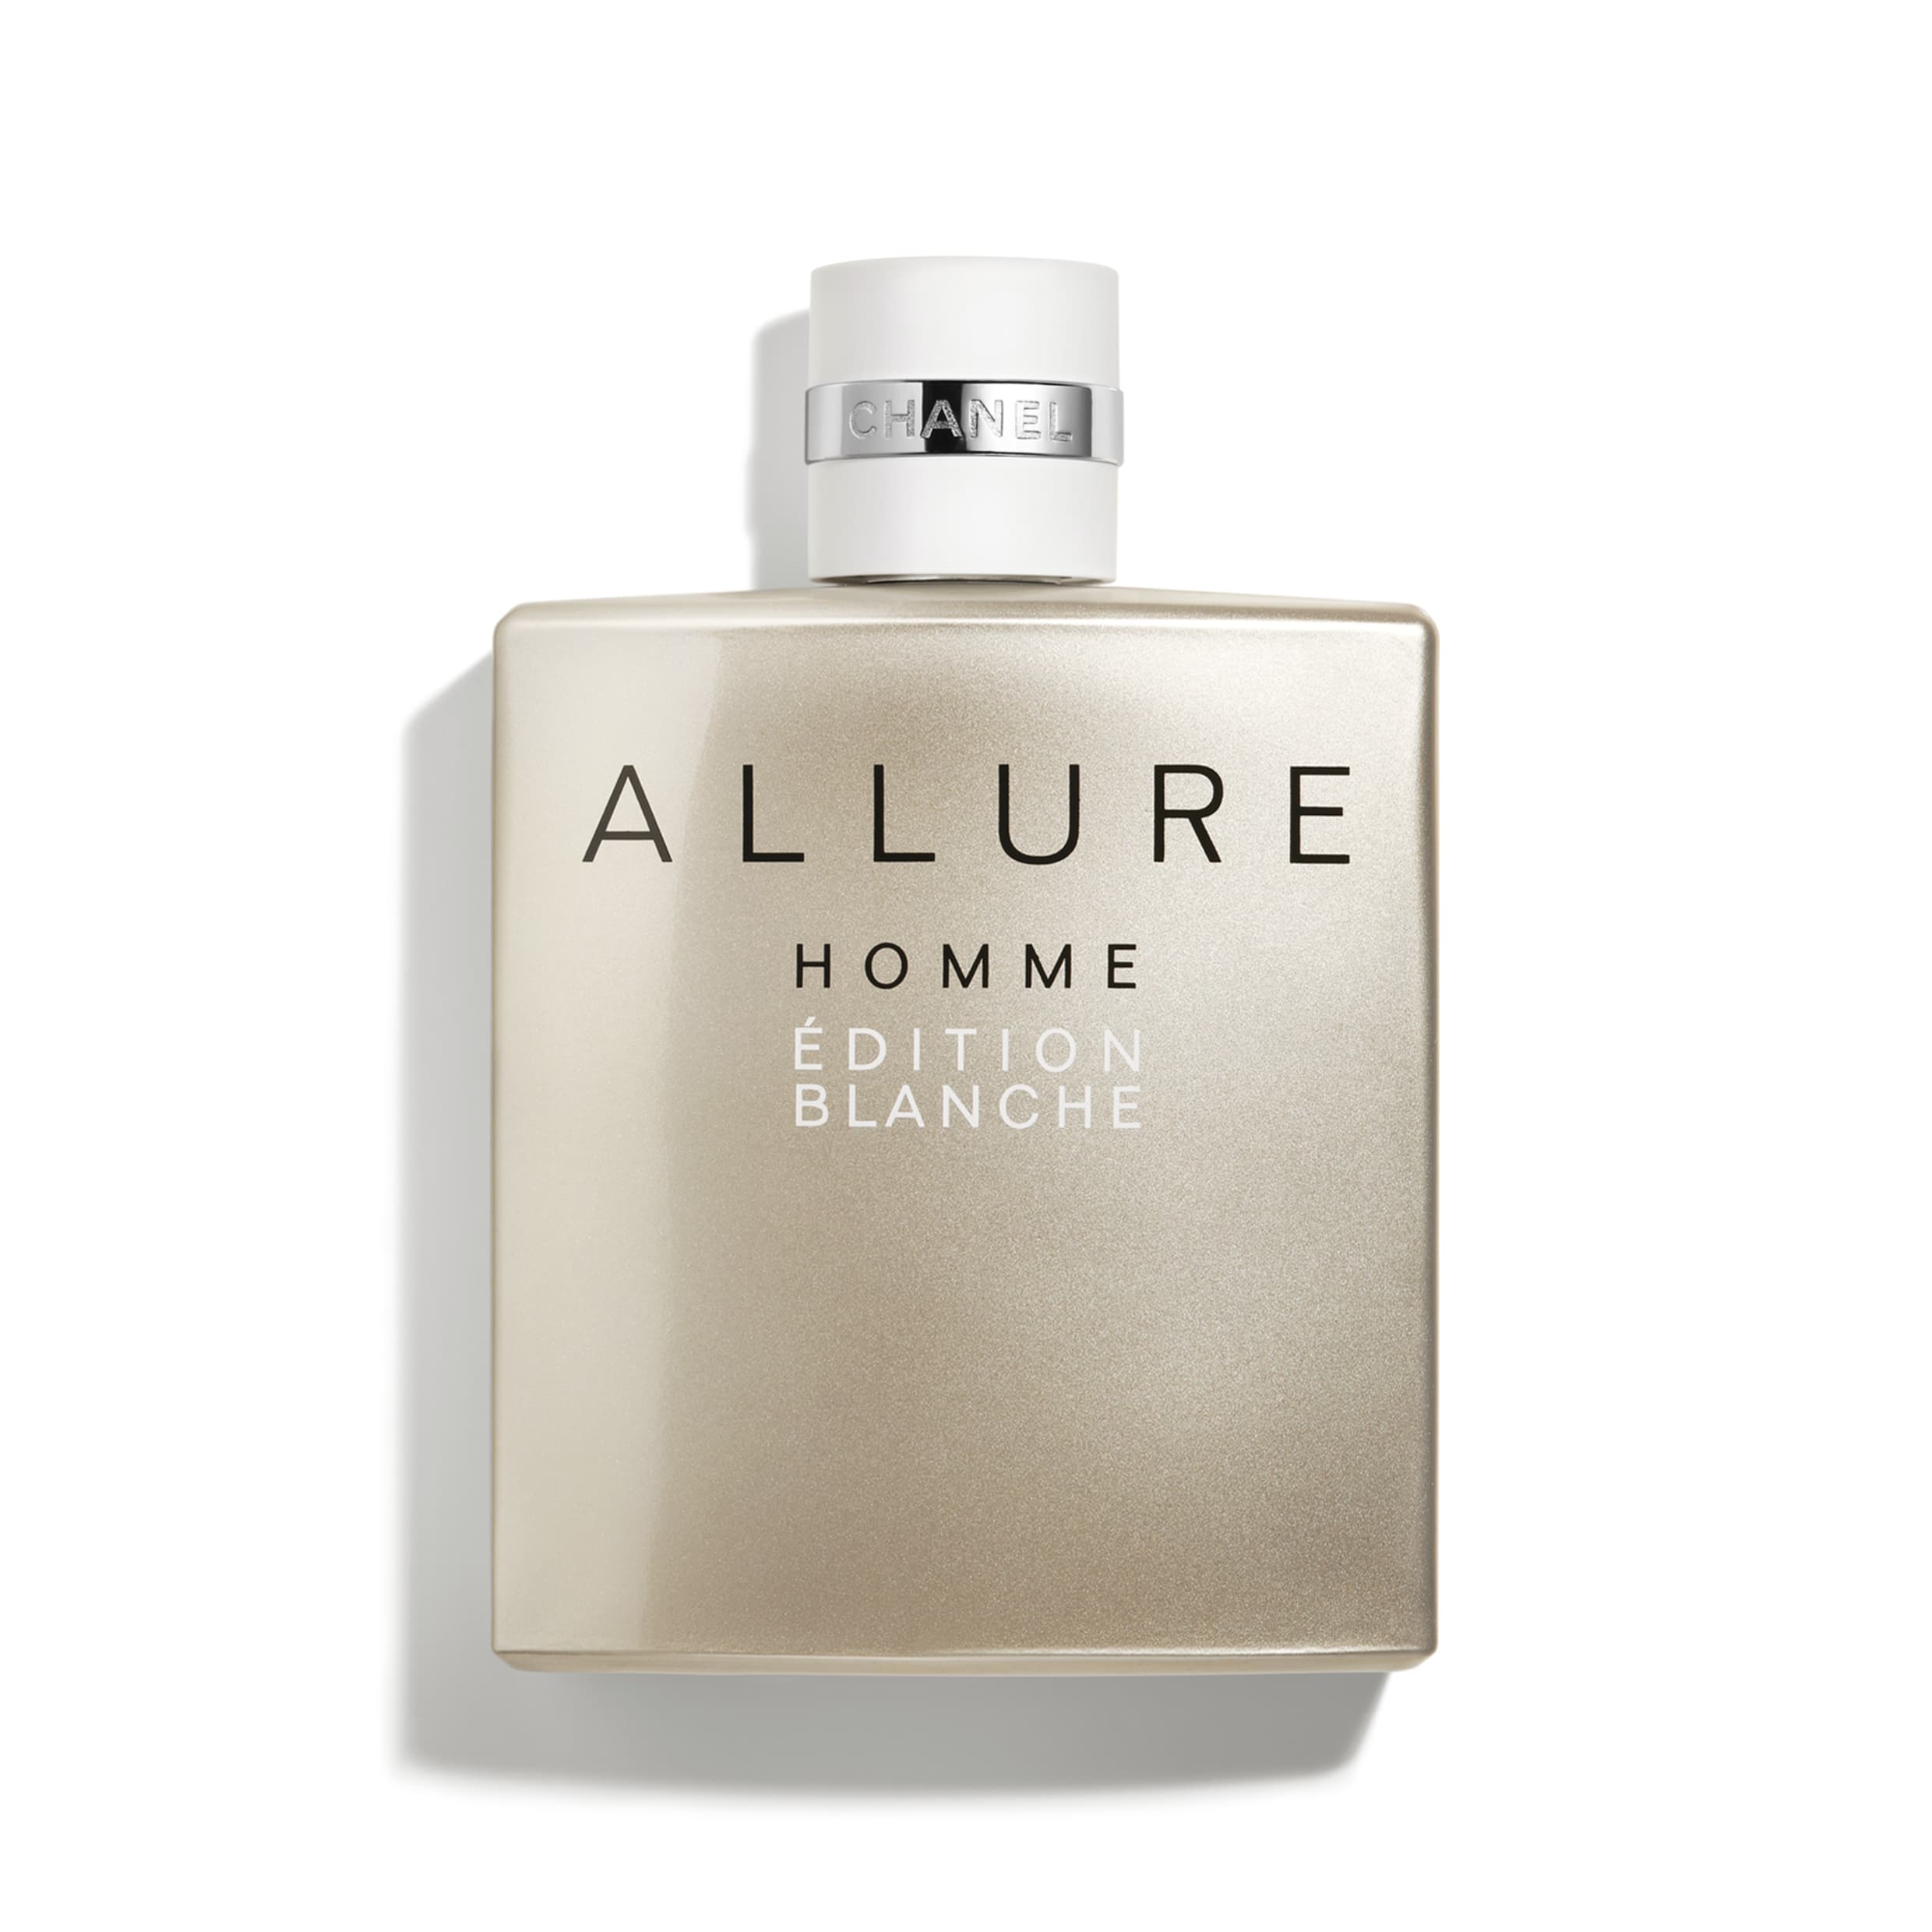 Allure Homme Edition Blanche Eau de Parfum Chanel cologne - a new fragrance for men 2014